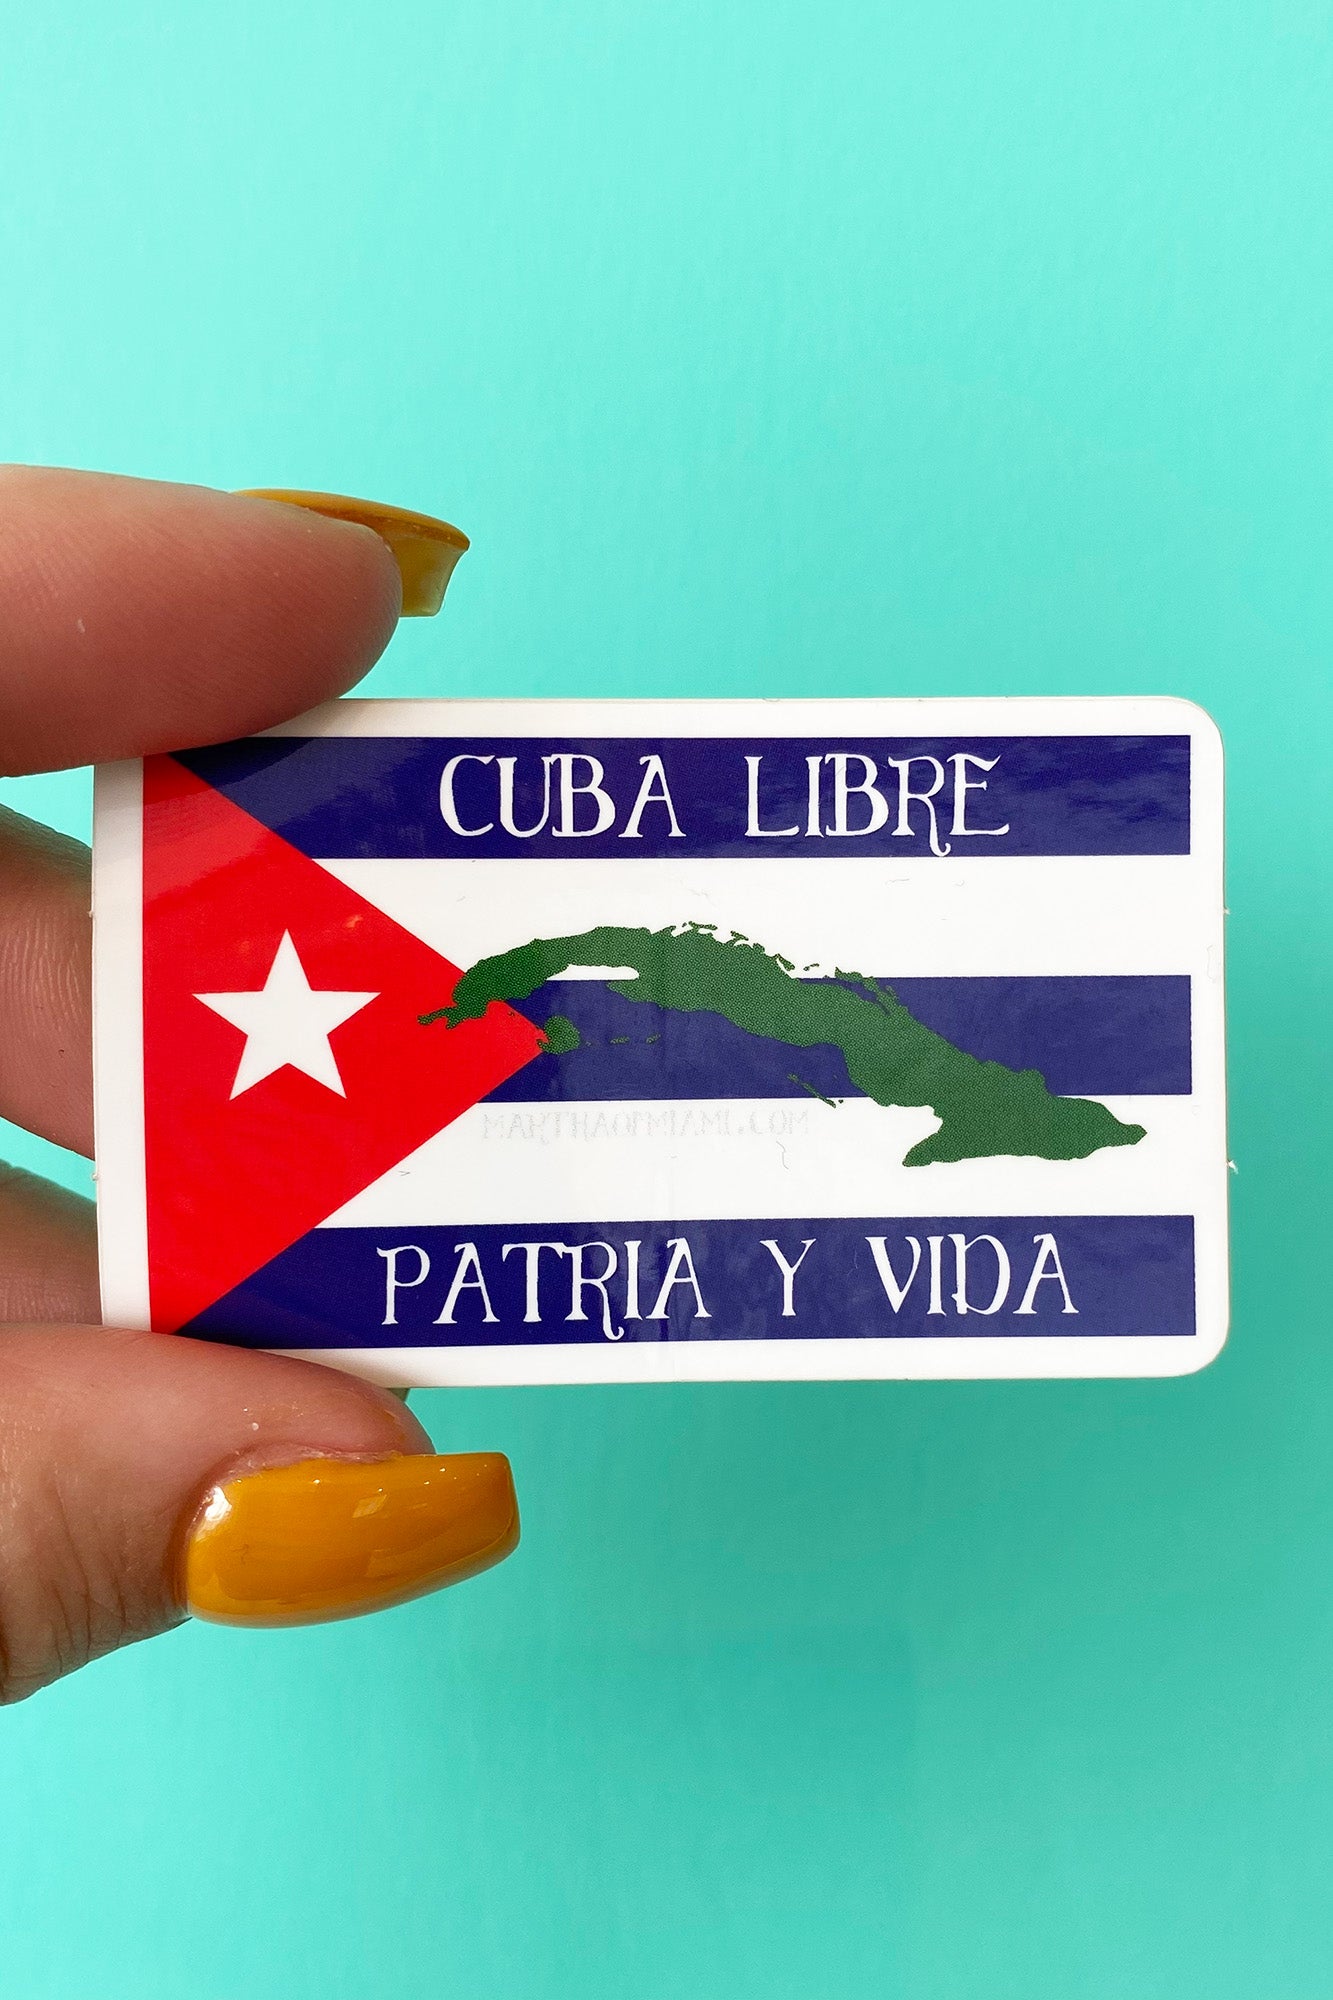 Cuba Football | Sticker